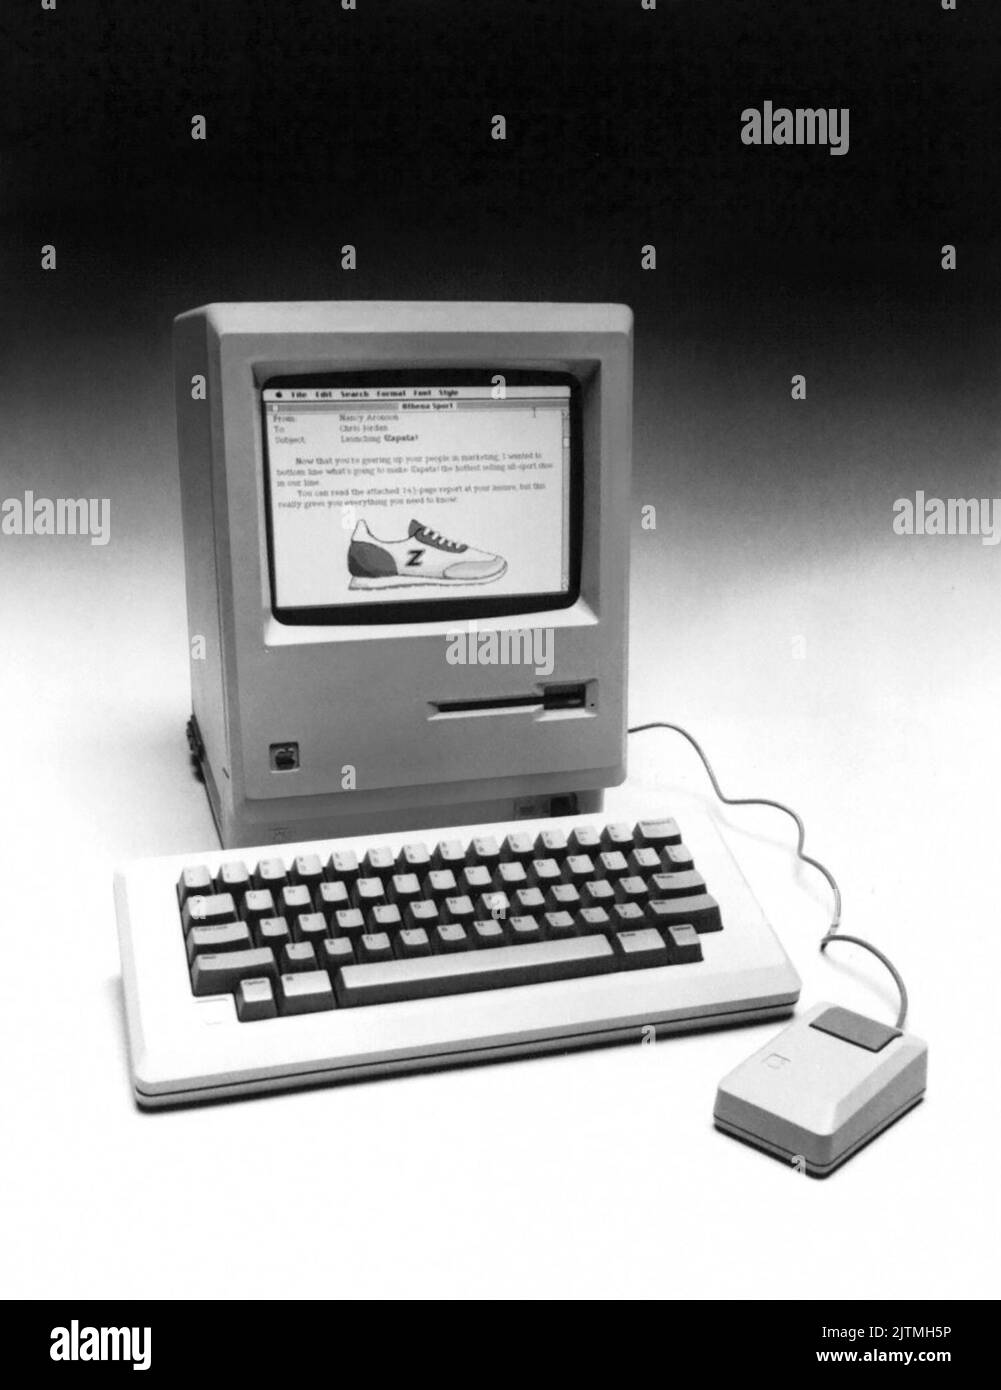 Das Werbefoto von Apple Computer im Januar 1984 von ihrem brandneuen Macintosh-Computer. Apple kündigte den neuen Macintosh mit einem 32-Bit-Mikroprozessor, einem integrierten 3,5-Zoll-Laufwerk, einem 9-Zoll-Schwarz-auf-Weiß-Display, 64k ROM und 128k RAM sowie einer abnehmbaren Tastatur und einem Mauszeigegerät an. Unverbindliche Preisempfehlung: 2.495 US-Dollar. Stockfoto